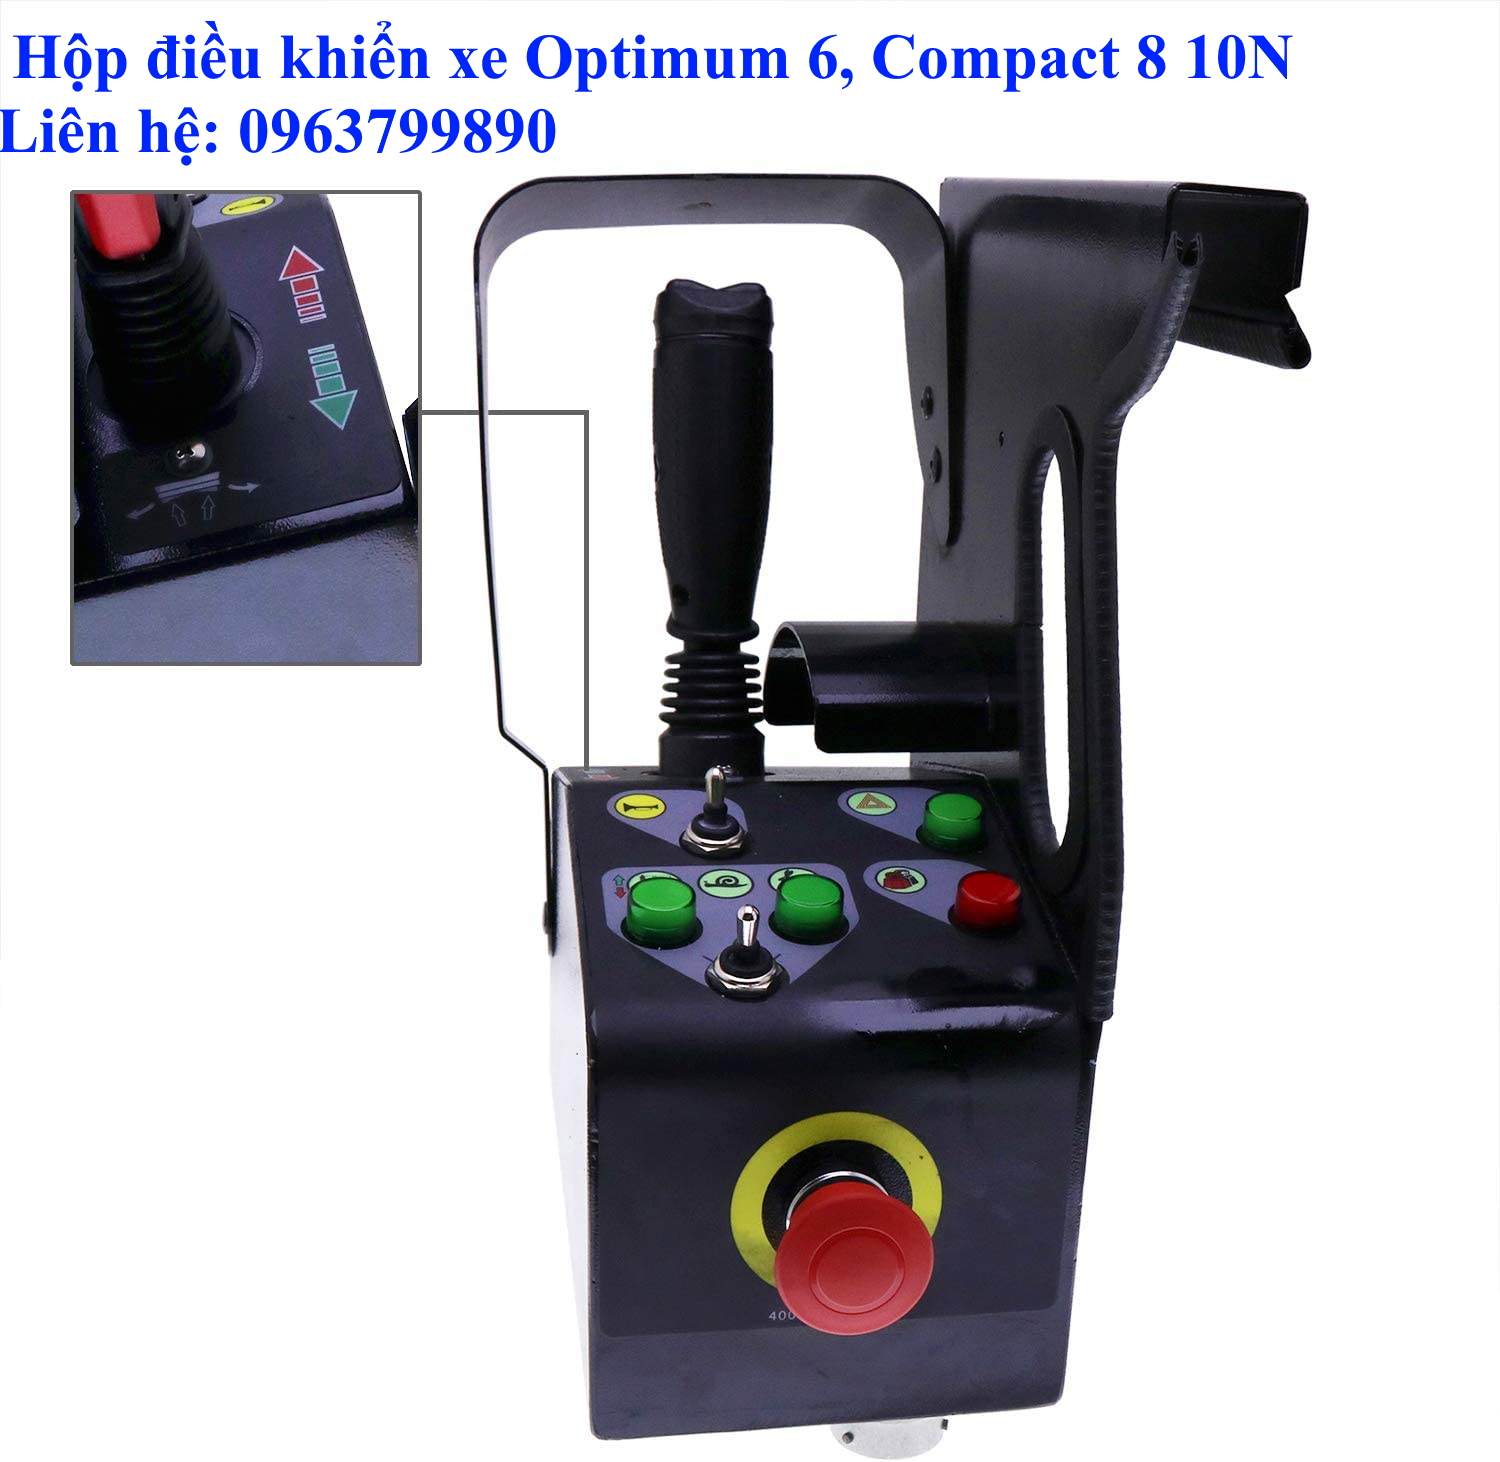 Hộp điều khiển sử dụng cho xe nâng người cắt kéo Haulotte: Optimum 6, Compact 8 10N